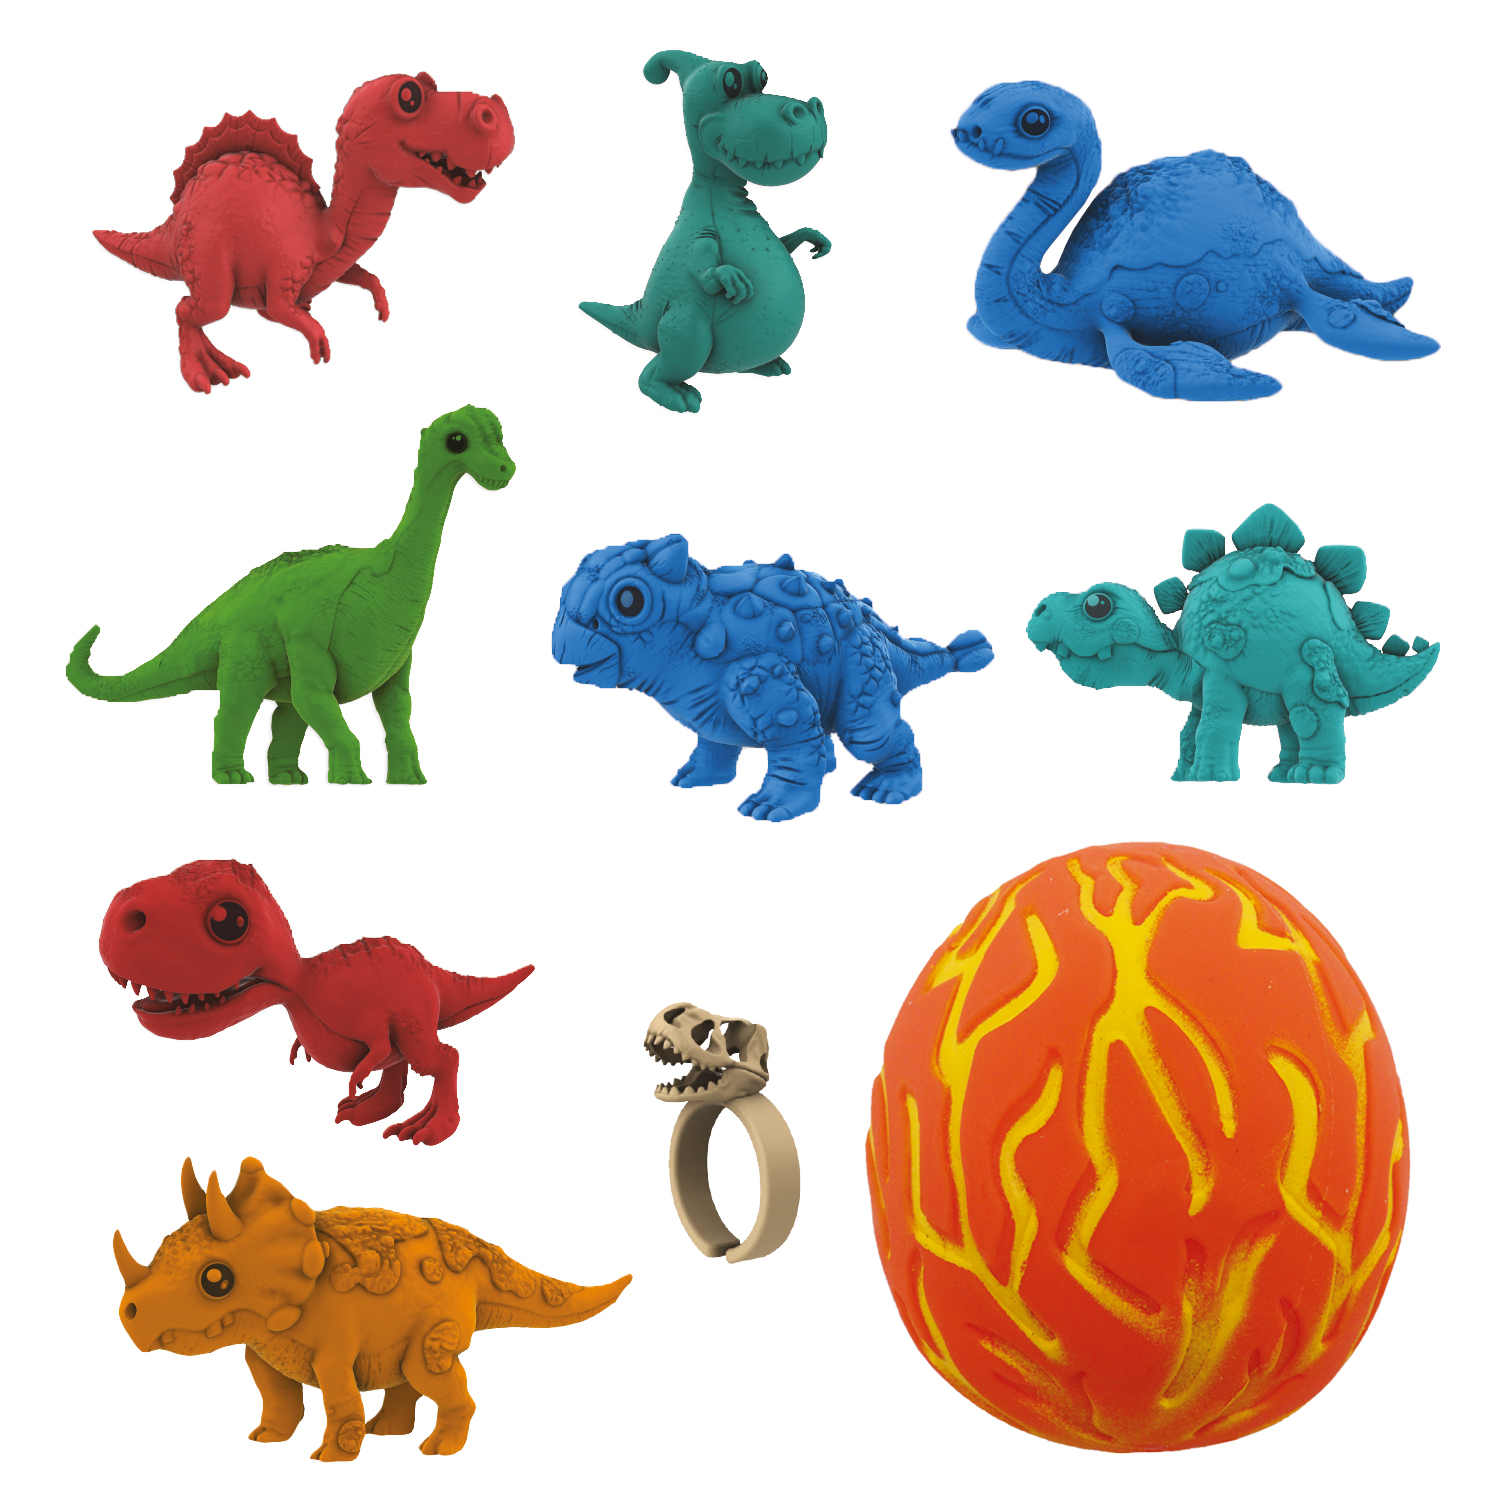 Коллекционная фигурка-сюрприз динозавра в яйце-сквише Lava Egg, 8 героев, Crazy Dino, CD02 коллекционная фигурка диносити сюрприз dinof001